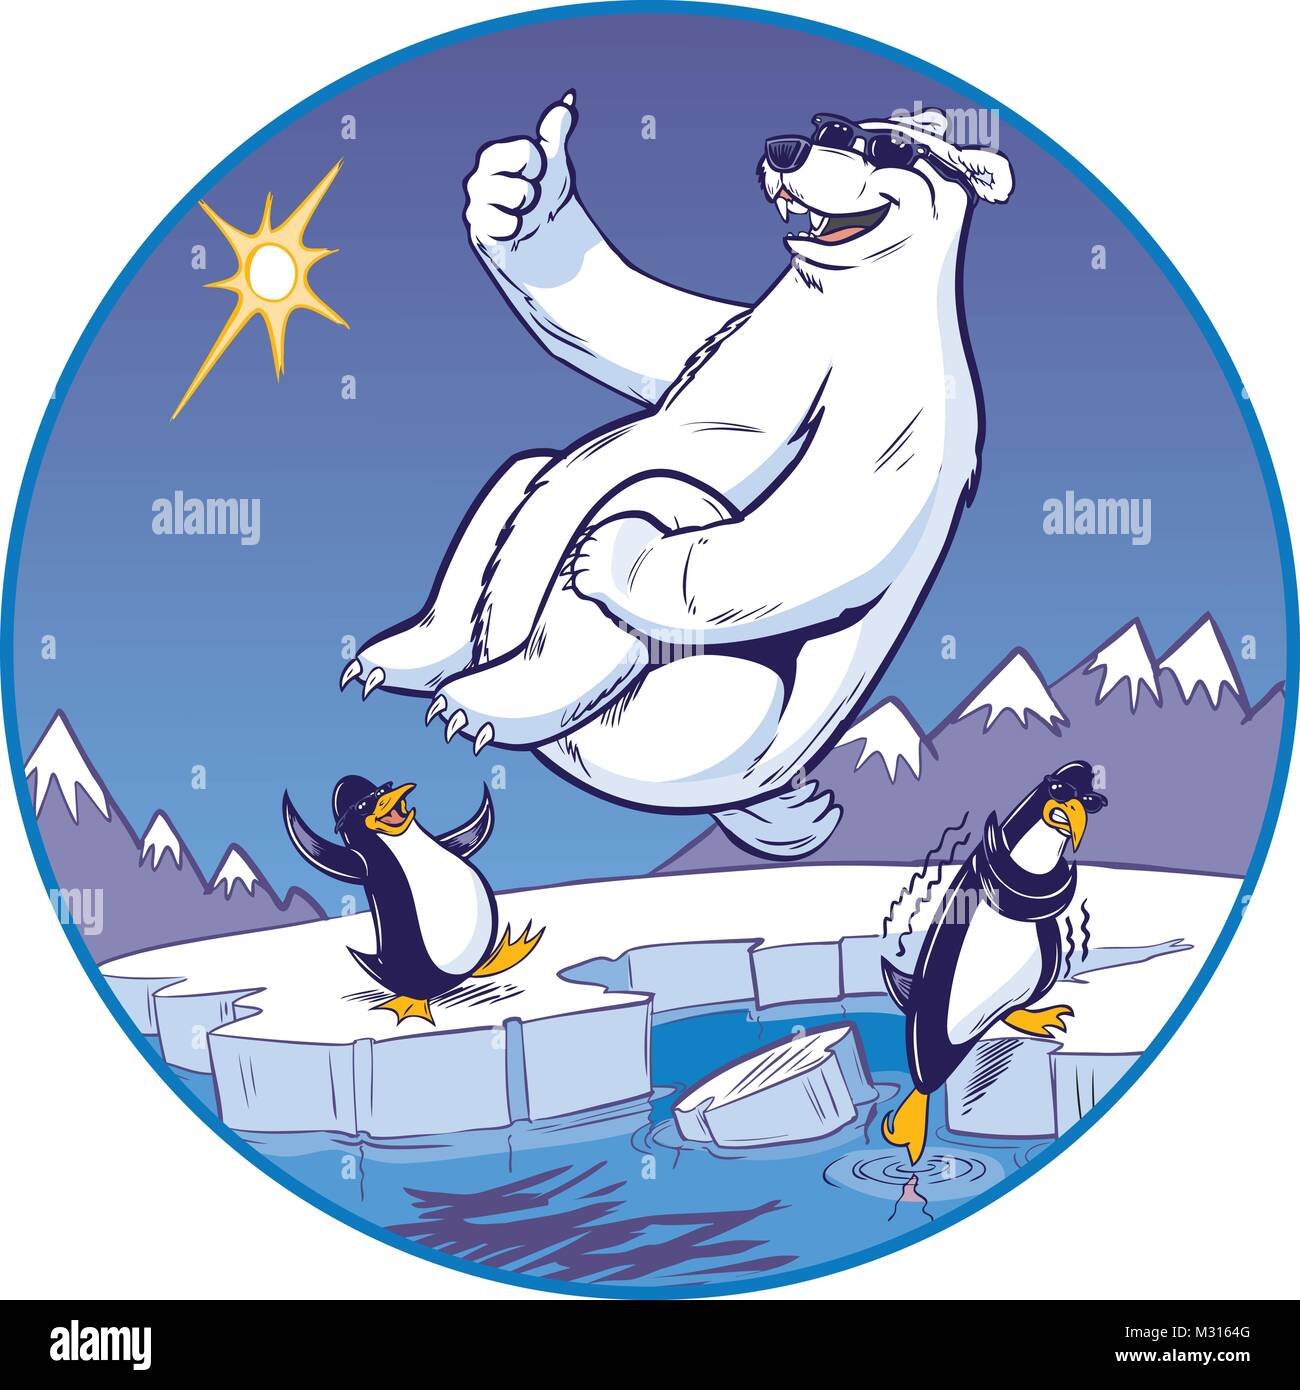 Vektor cartoon Clipart Illustration eines niedlichen lustige Eisbär Maskottchen geben einen Daumen nach oben, während Sie eine Kanonenkugel stürzen. Pinguine beobachten von einem kalten Stock Vektor